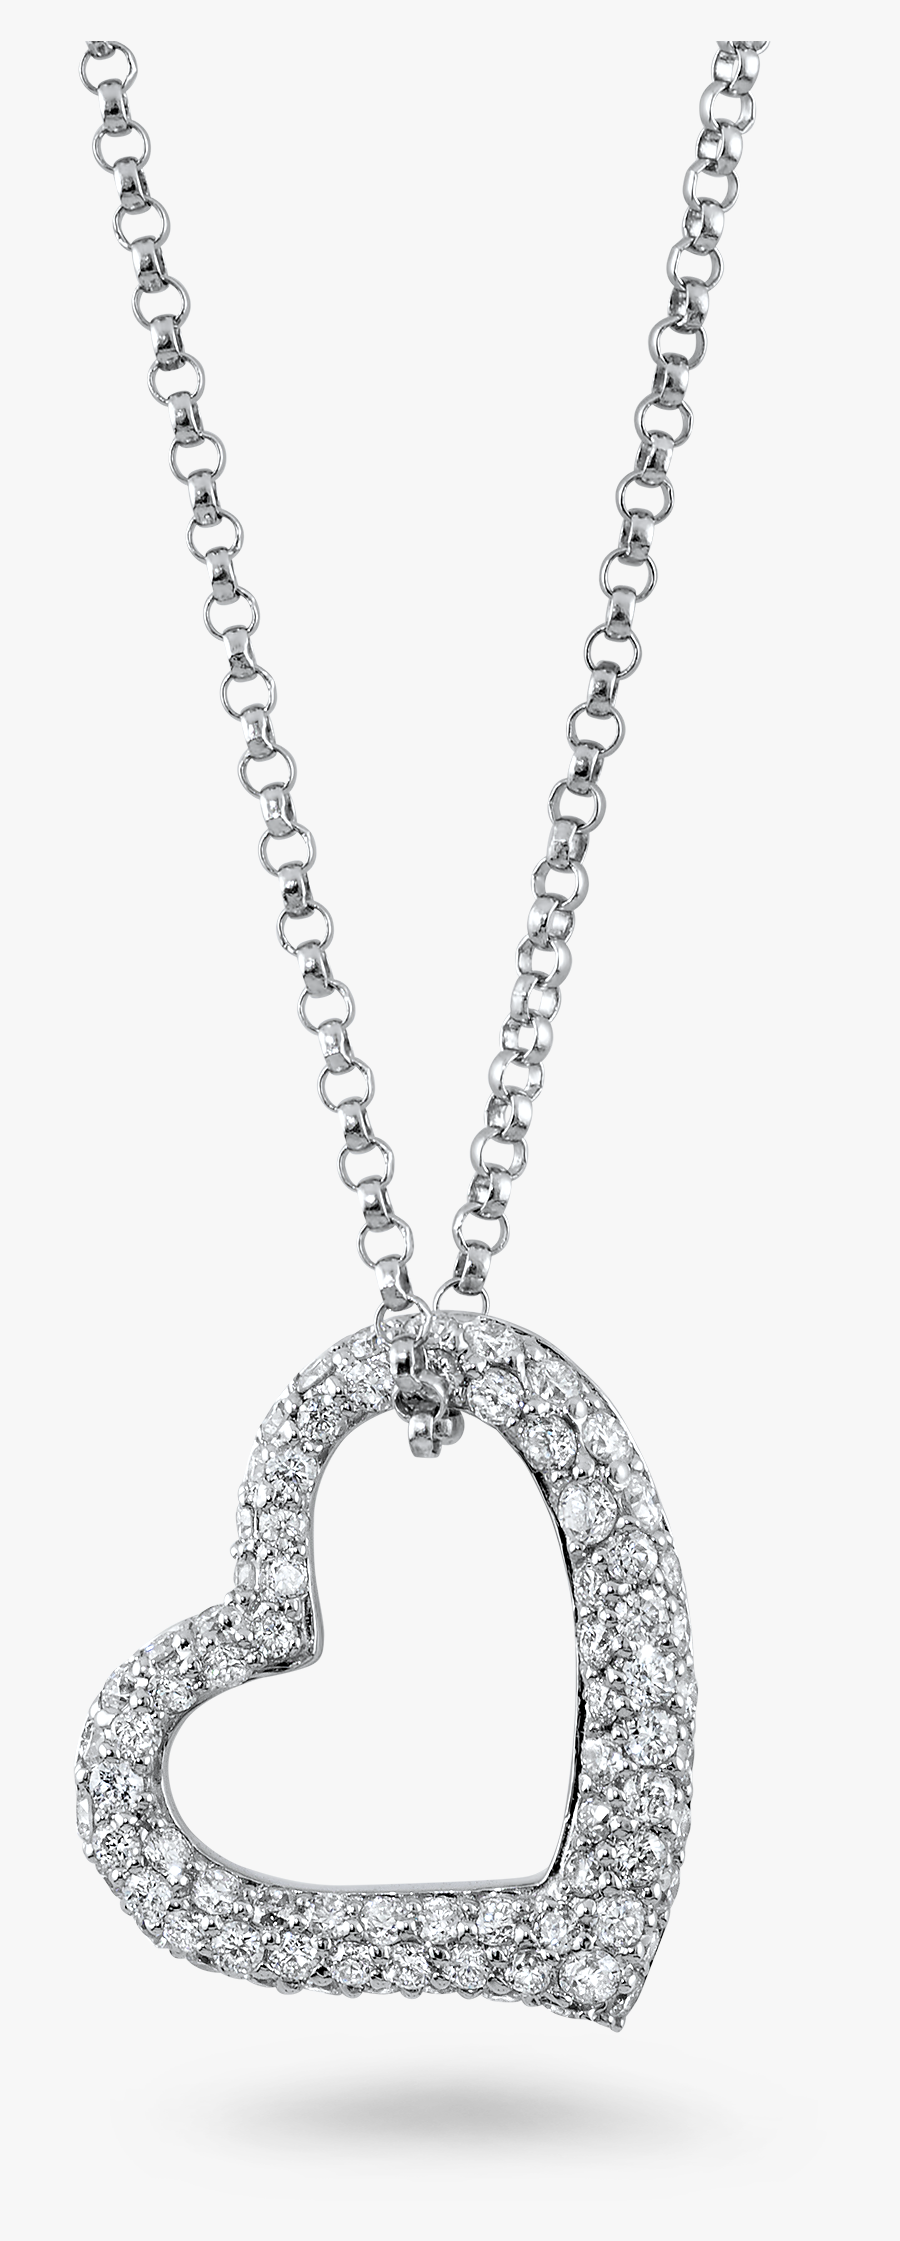 Beautiful Heart Design Diamond Necklace - Beautiful Diamond Necklace Designs, Transparent Clipart